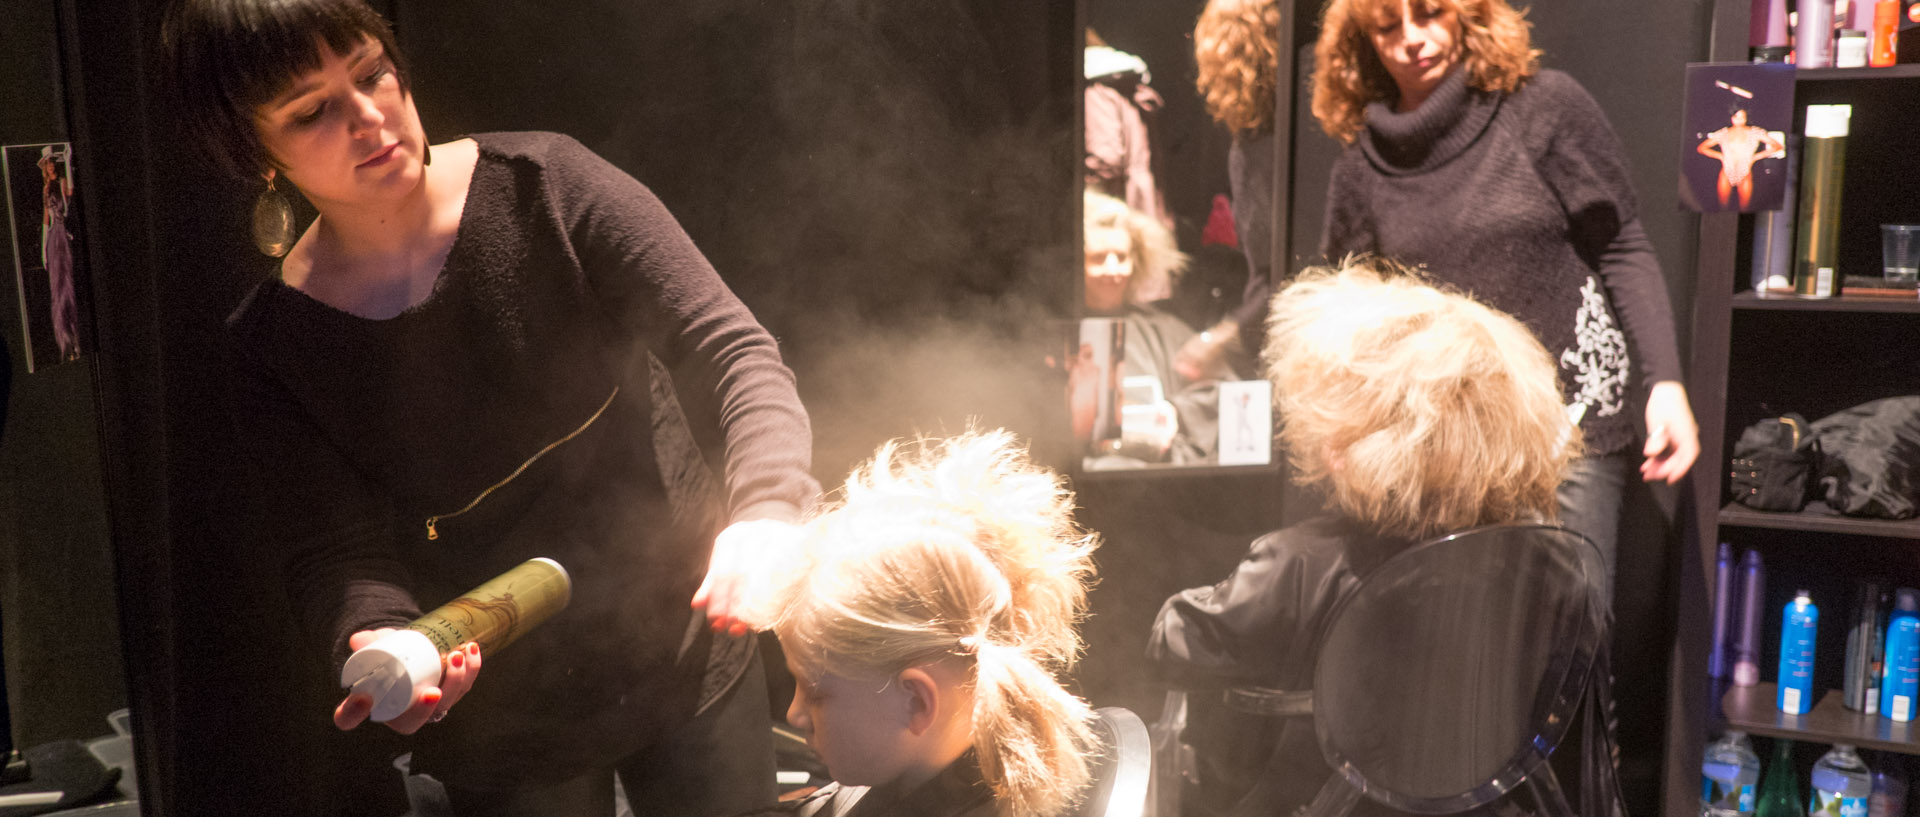 Salon de coiffure de Charlie Le Mingu au jardin des modes, faubourg des Postes, à Lille sud, dans le cadre de Fantastic.